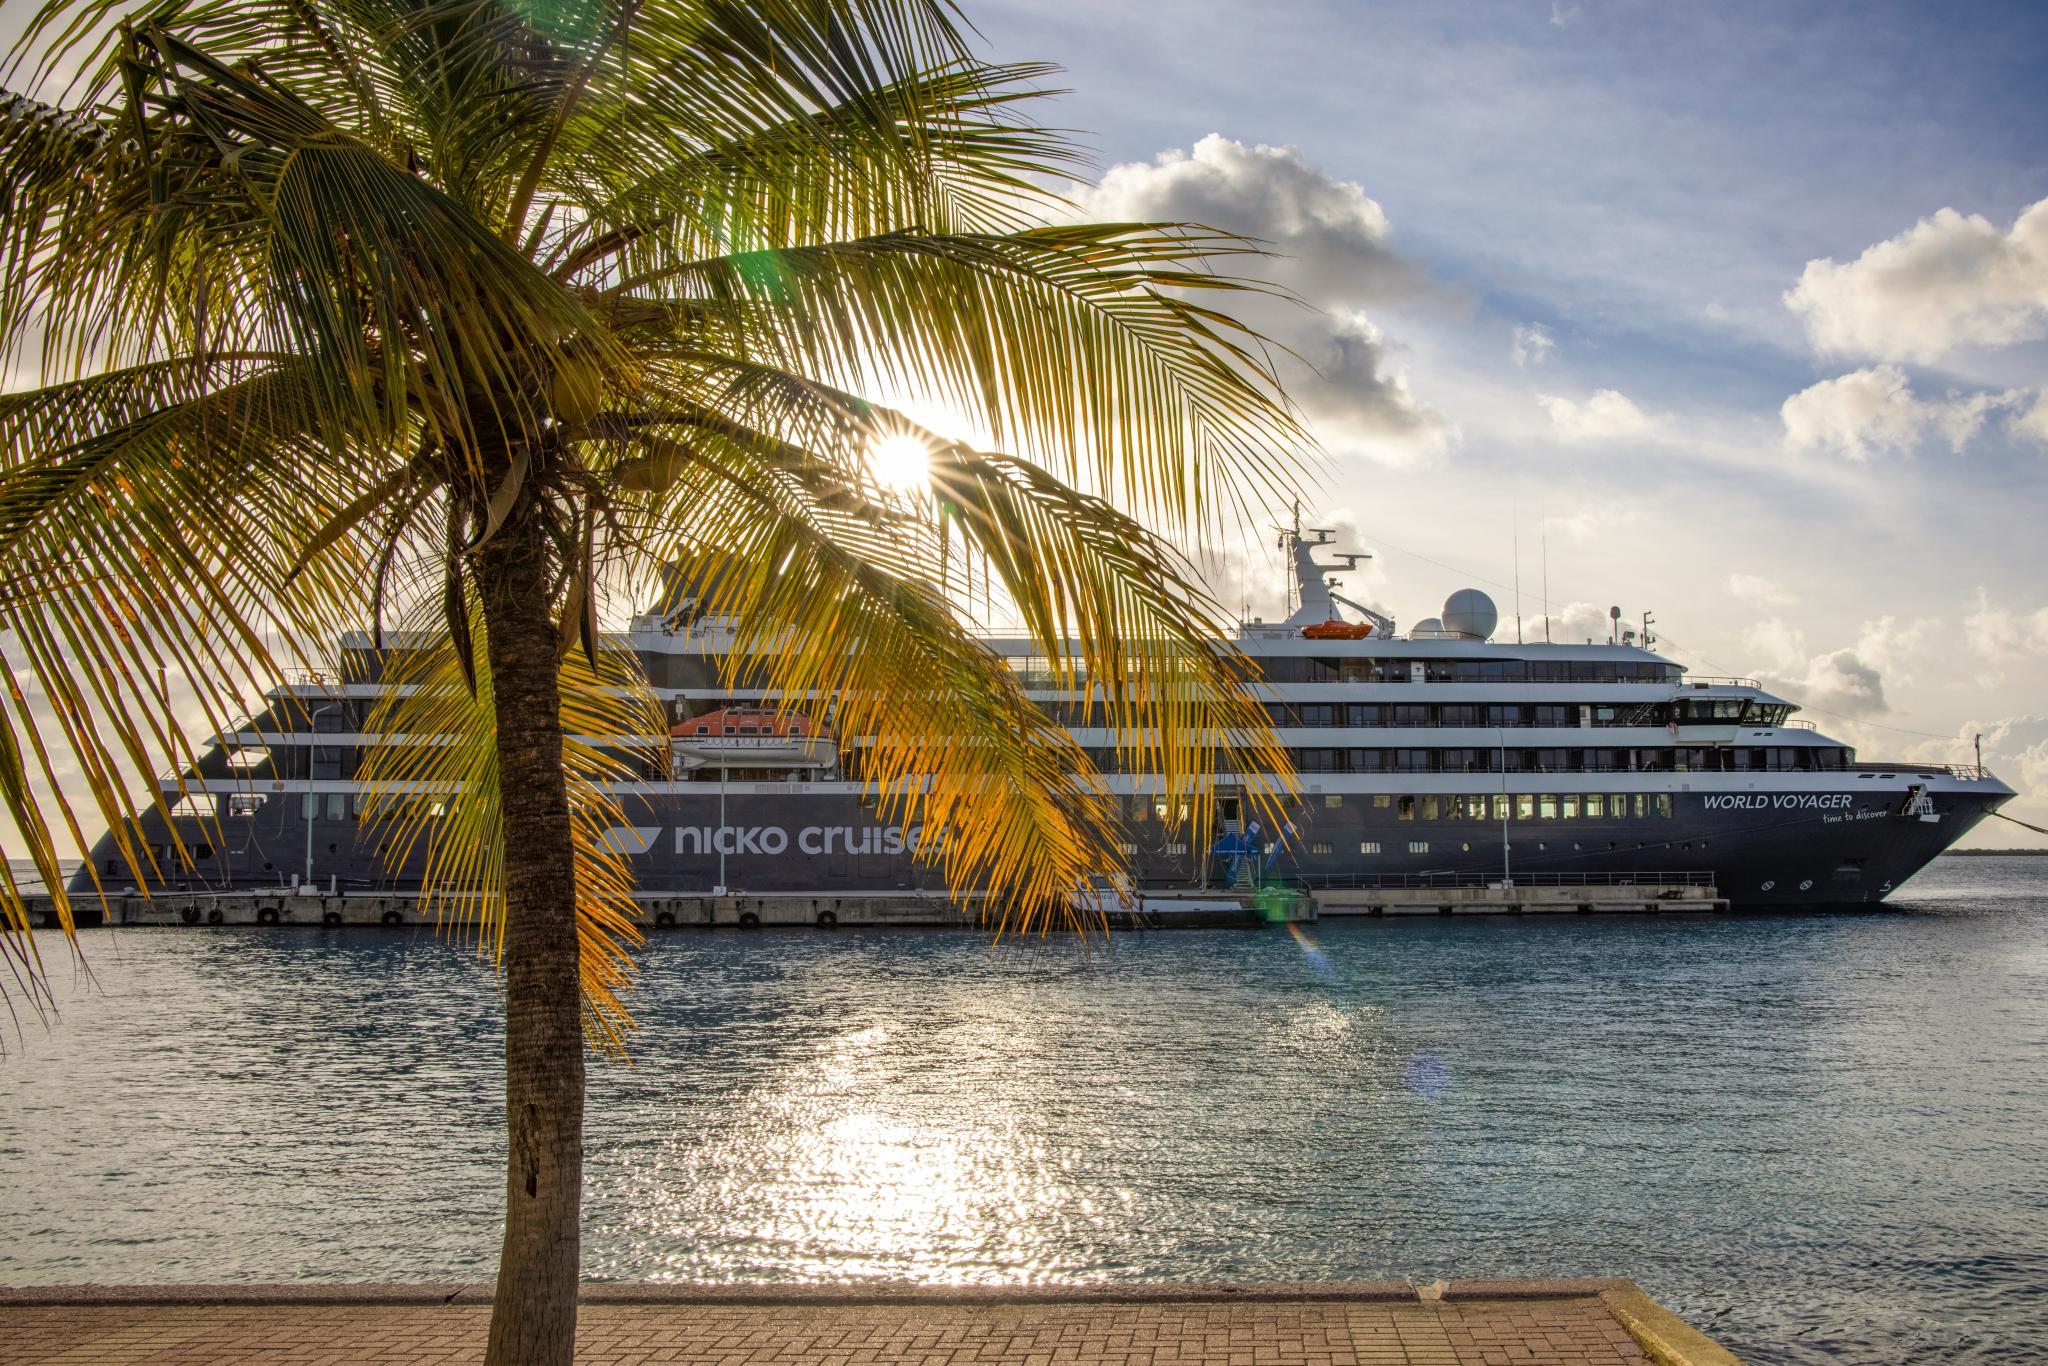 Der Stuttgarter Reiseveranstalter nicko cruises bietet mit dem Expeditionsschiff WORLD VOYAGER eine besonders intensive Kreuzfahrt mit allen Höhepunkten der beliebten Insel Kuba an.